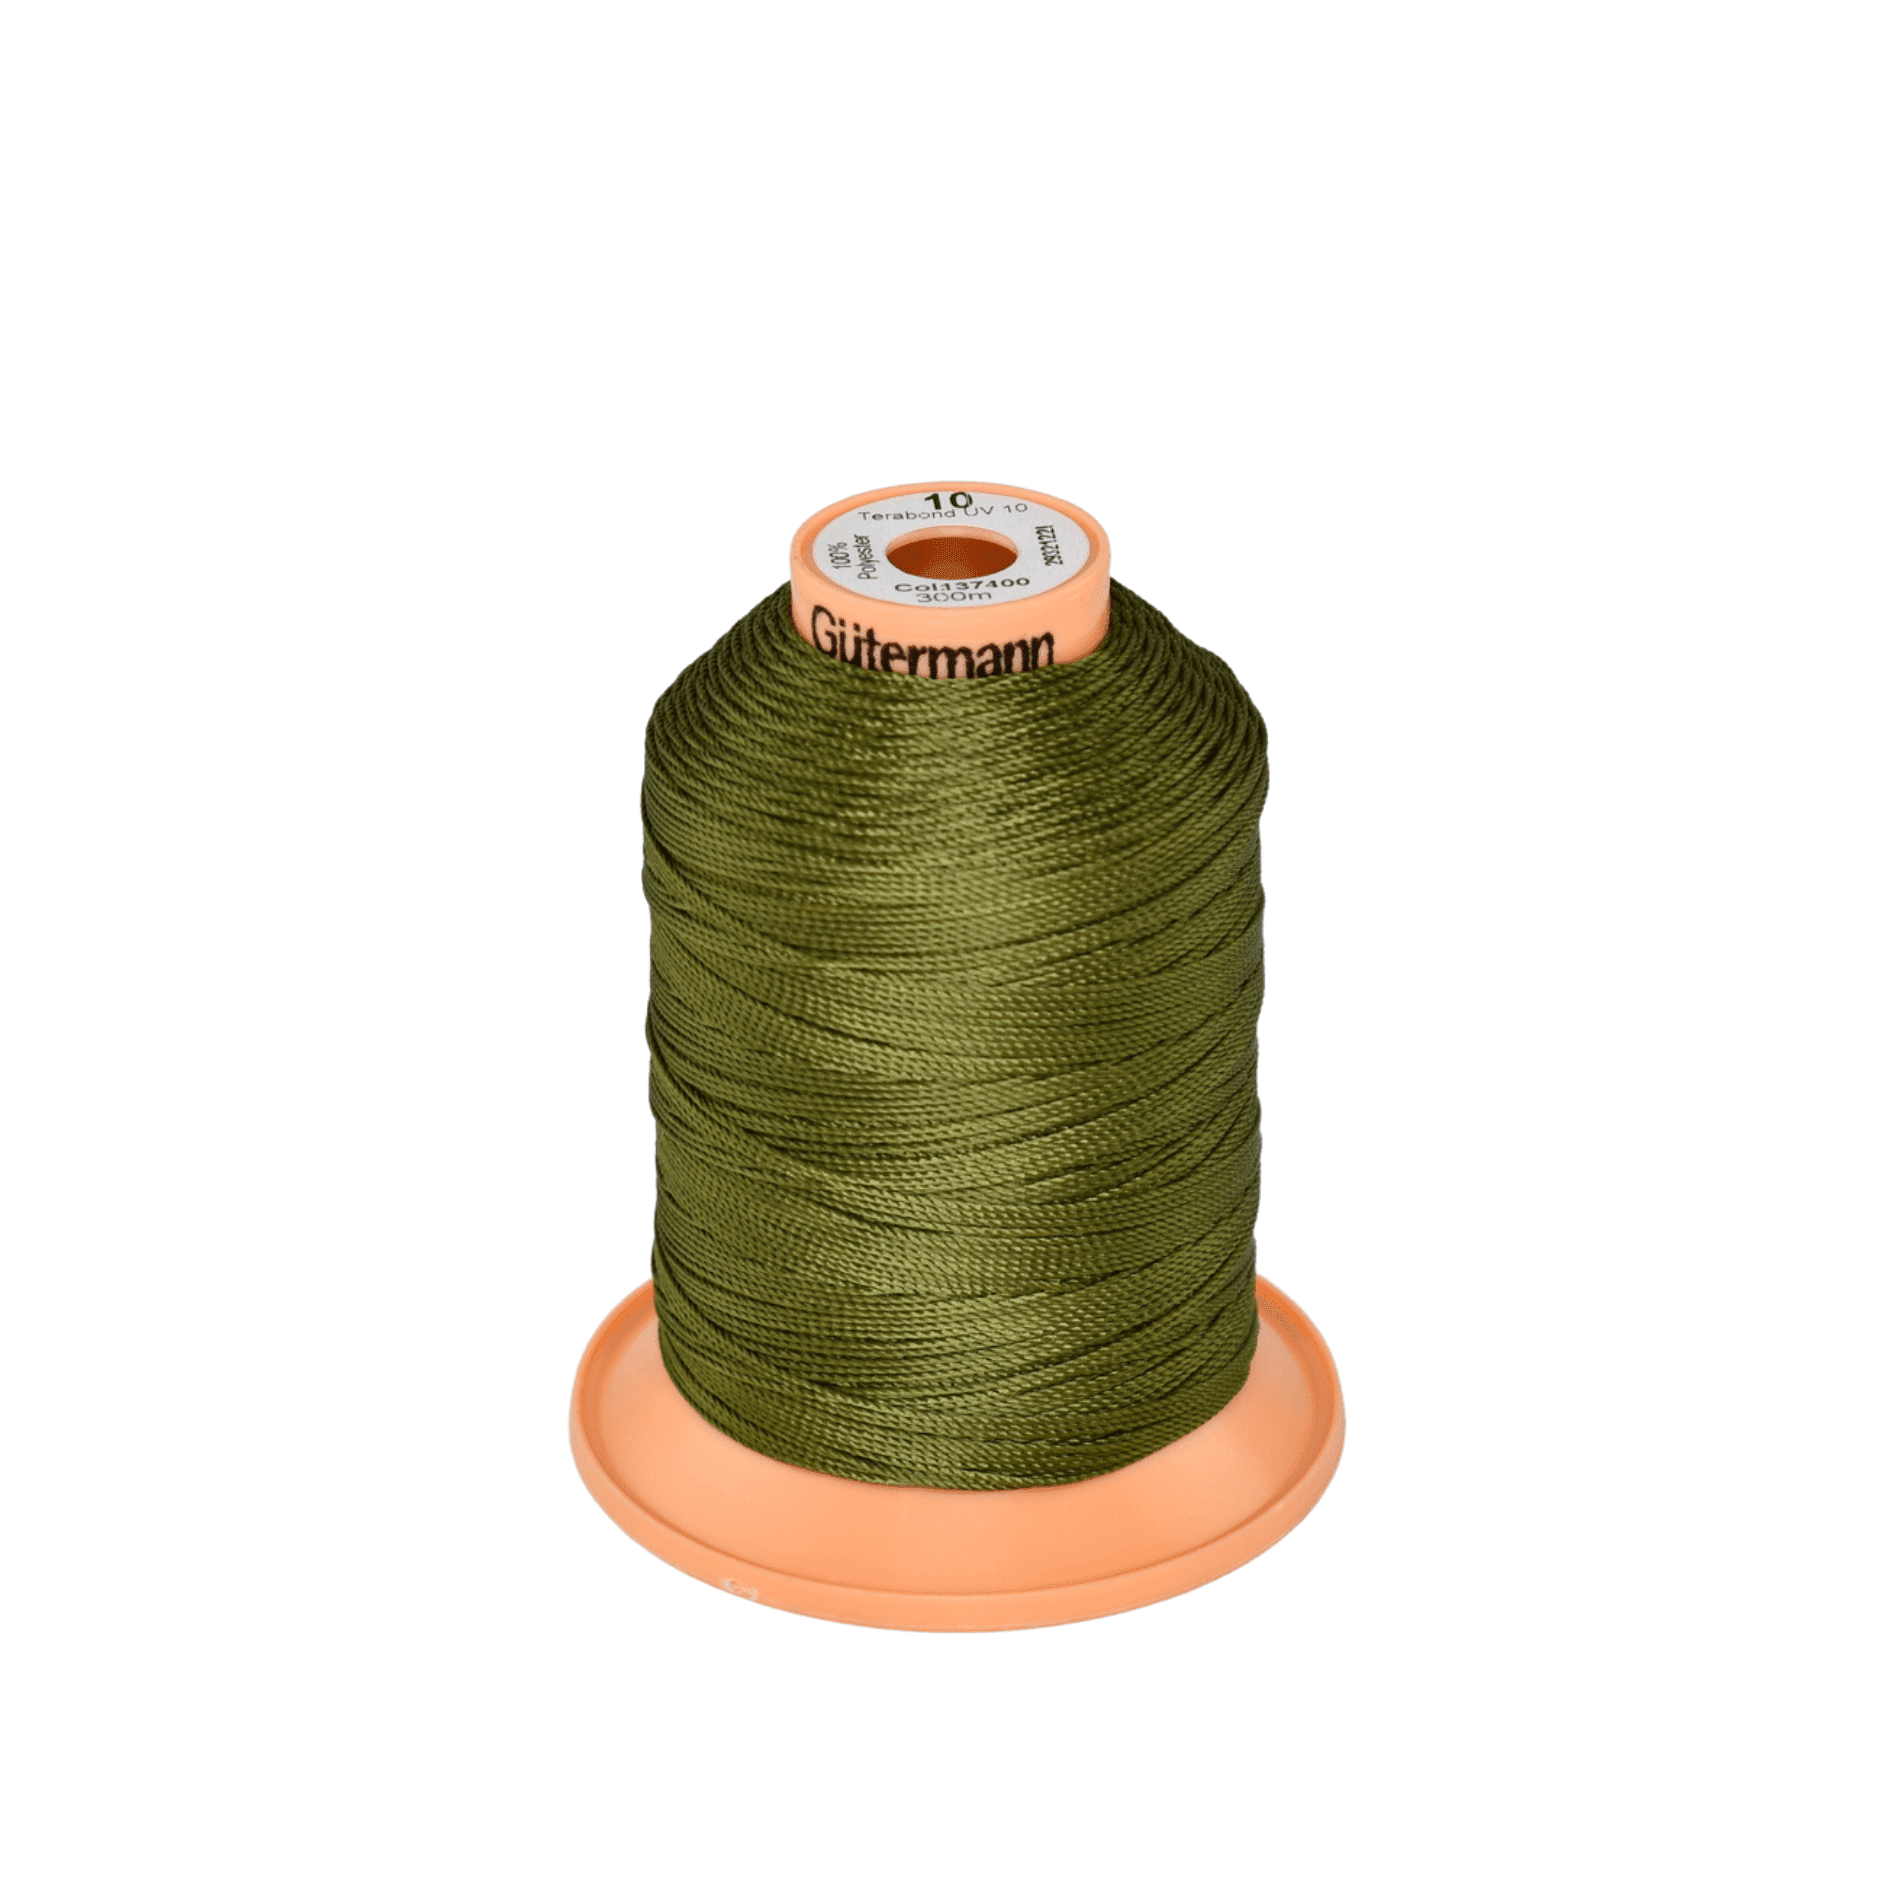 Green Gutermann Terabond 10 UV stabilised Sewing Thread x 300m Grey